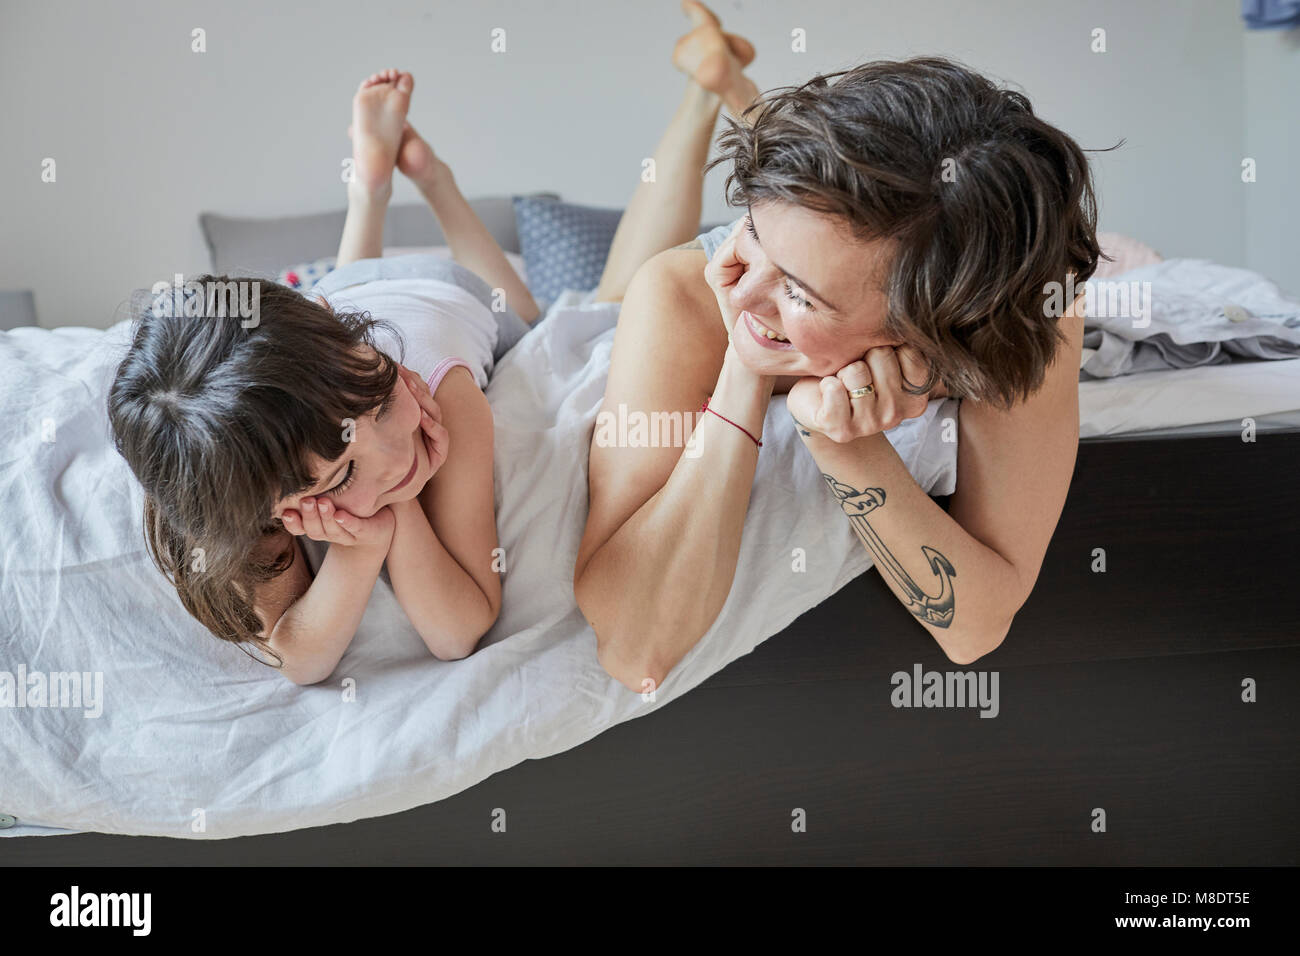 Madre e hija acostada en la cama, sonriente Foto de stock